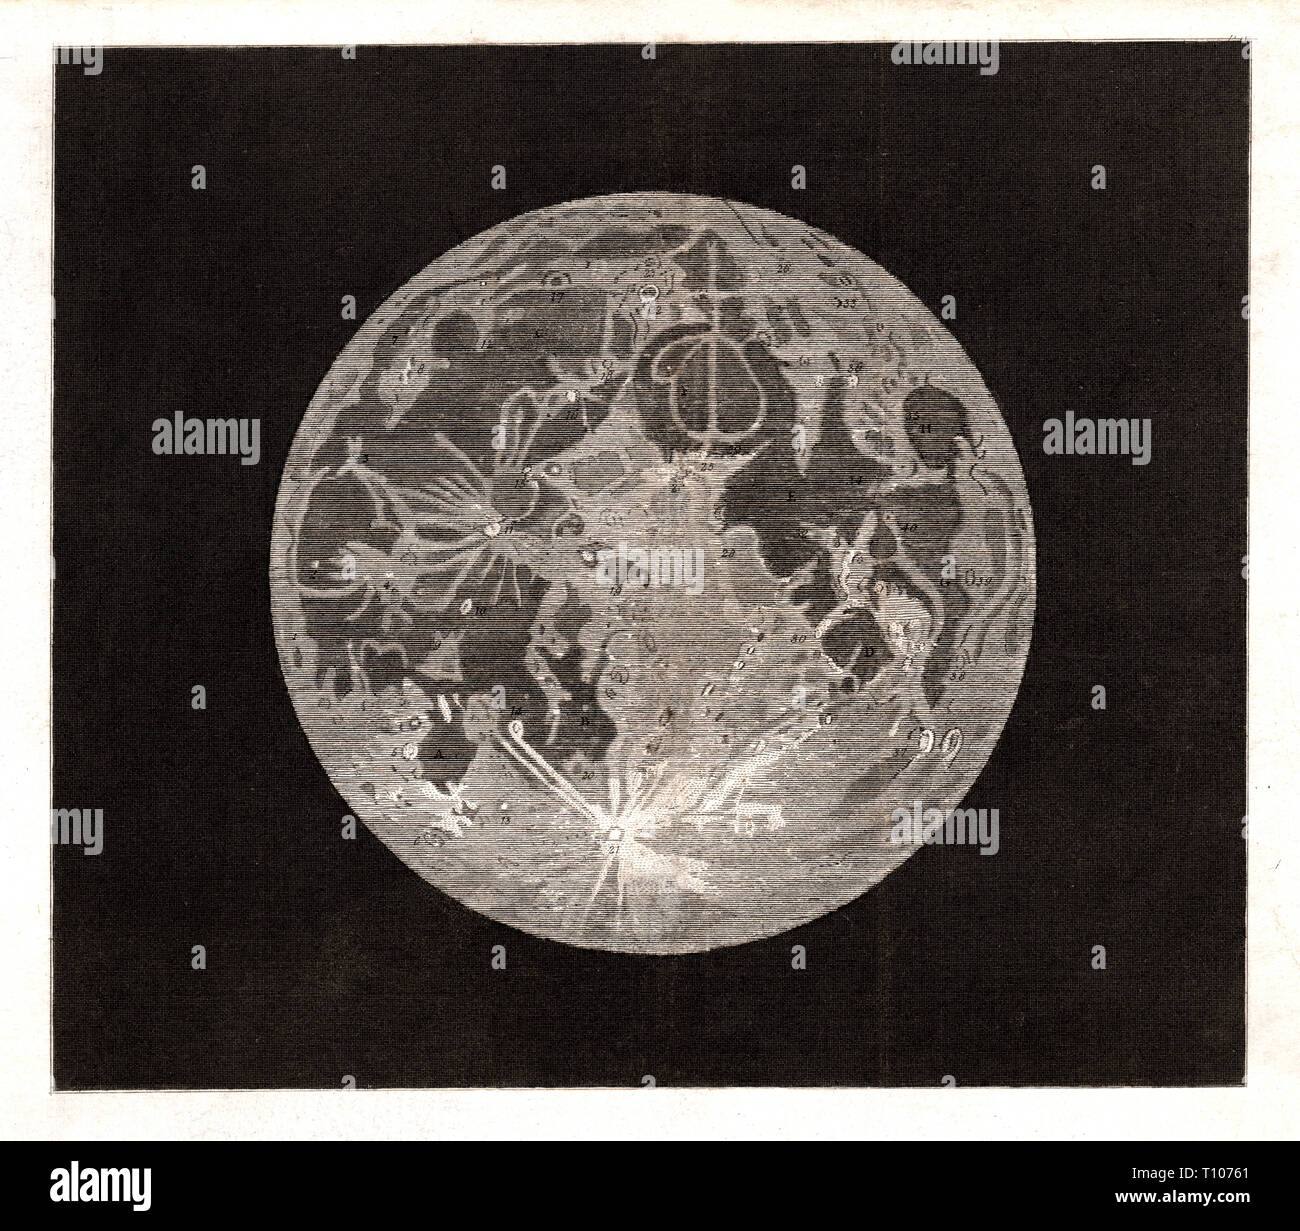 1804 Astronomia Stampa sulla Luna come visto attraverso un telescopio Foto Stock